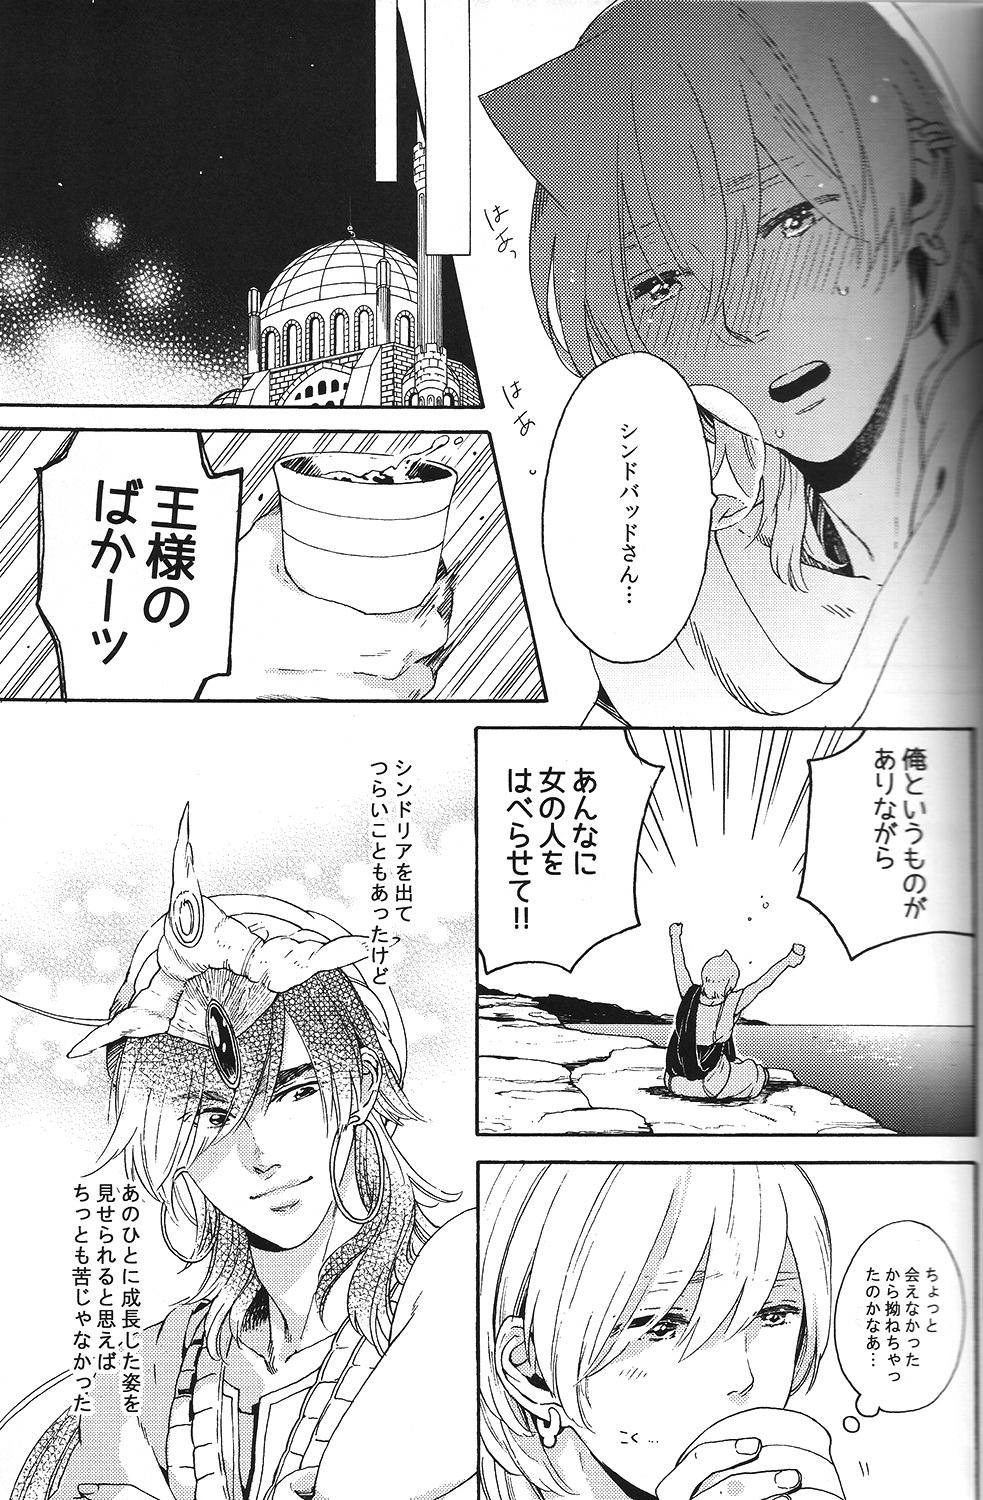 Sologirl Ore no Sinbad-san ga konnani kawaii wake ga nai - Magi the labyrinth of magic Naturaltits - Page 11